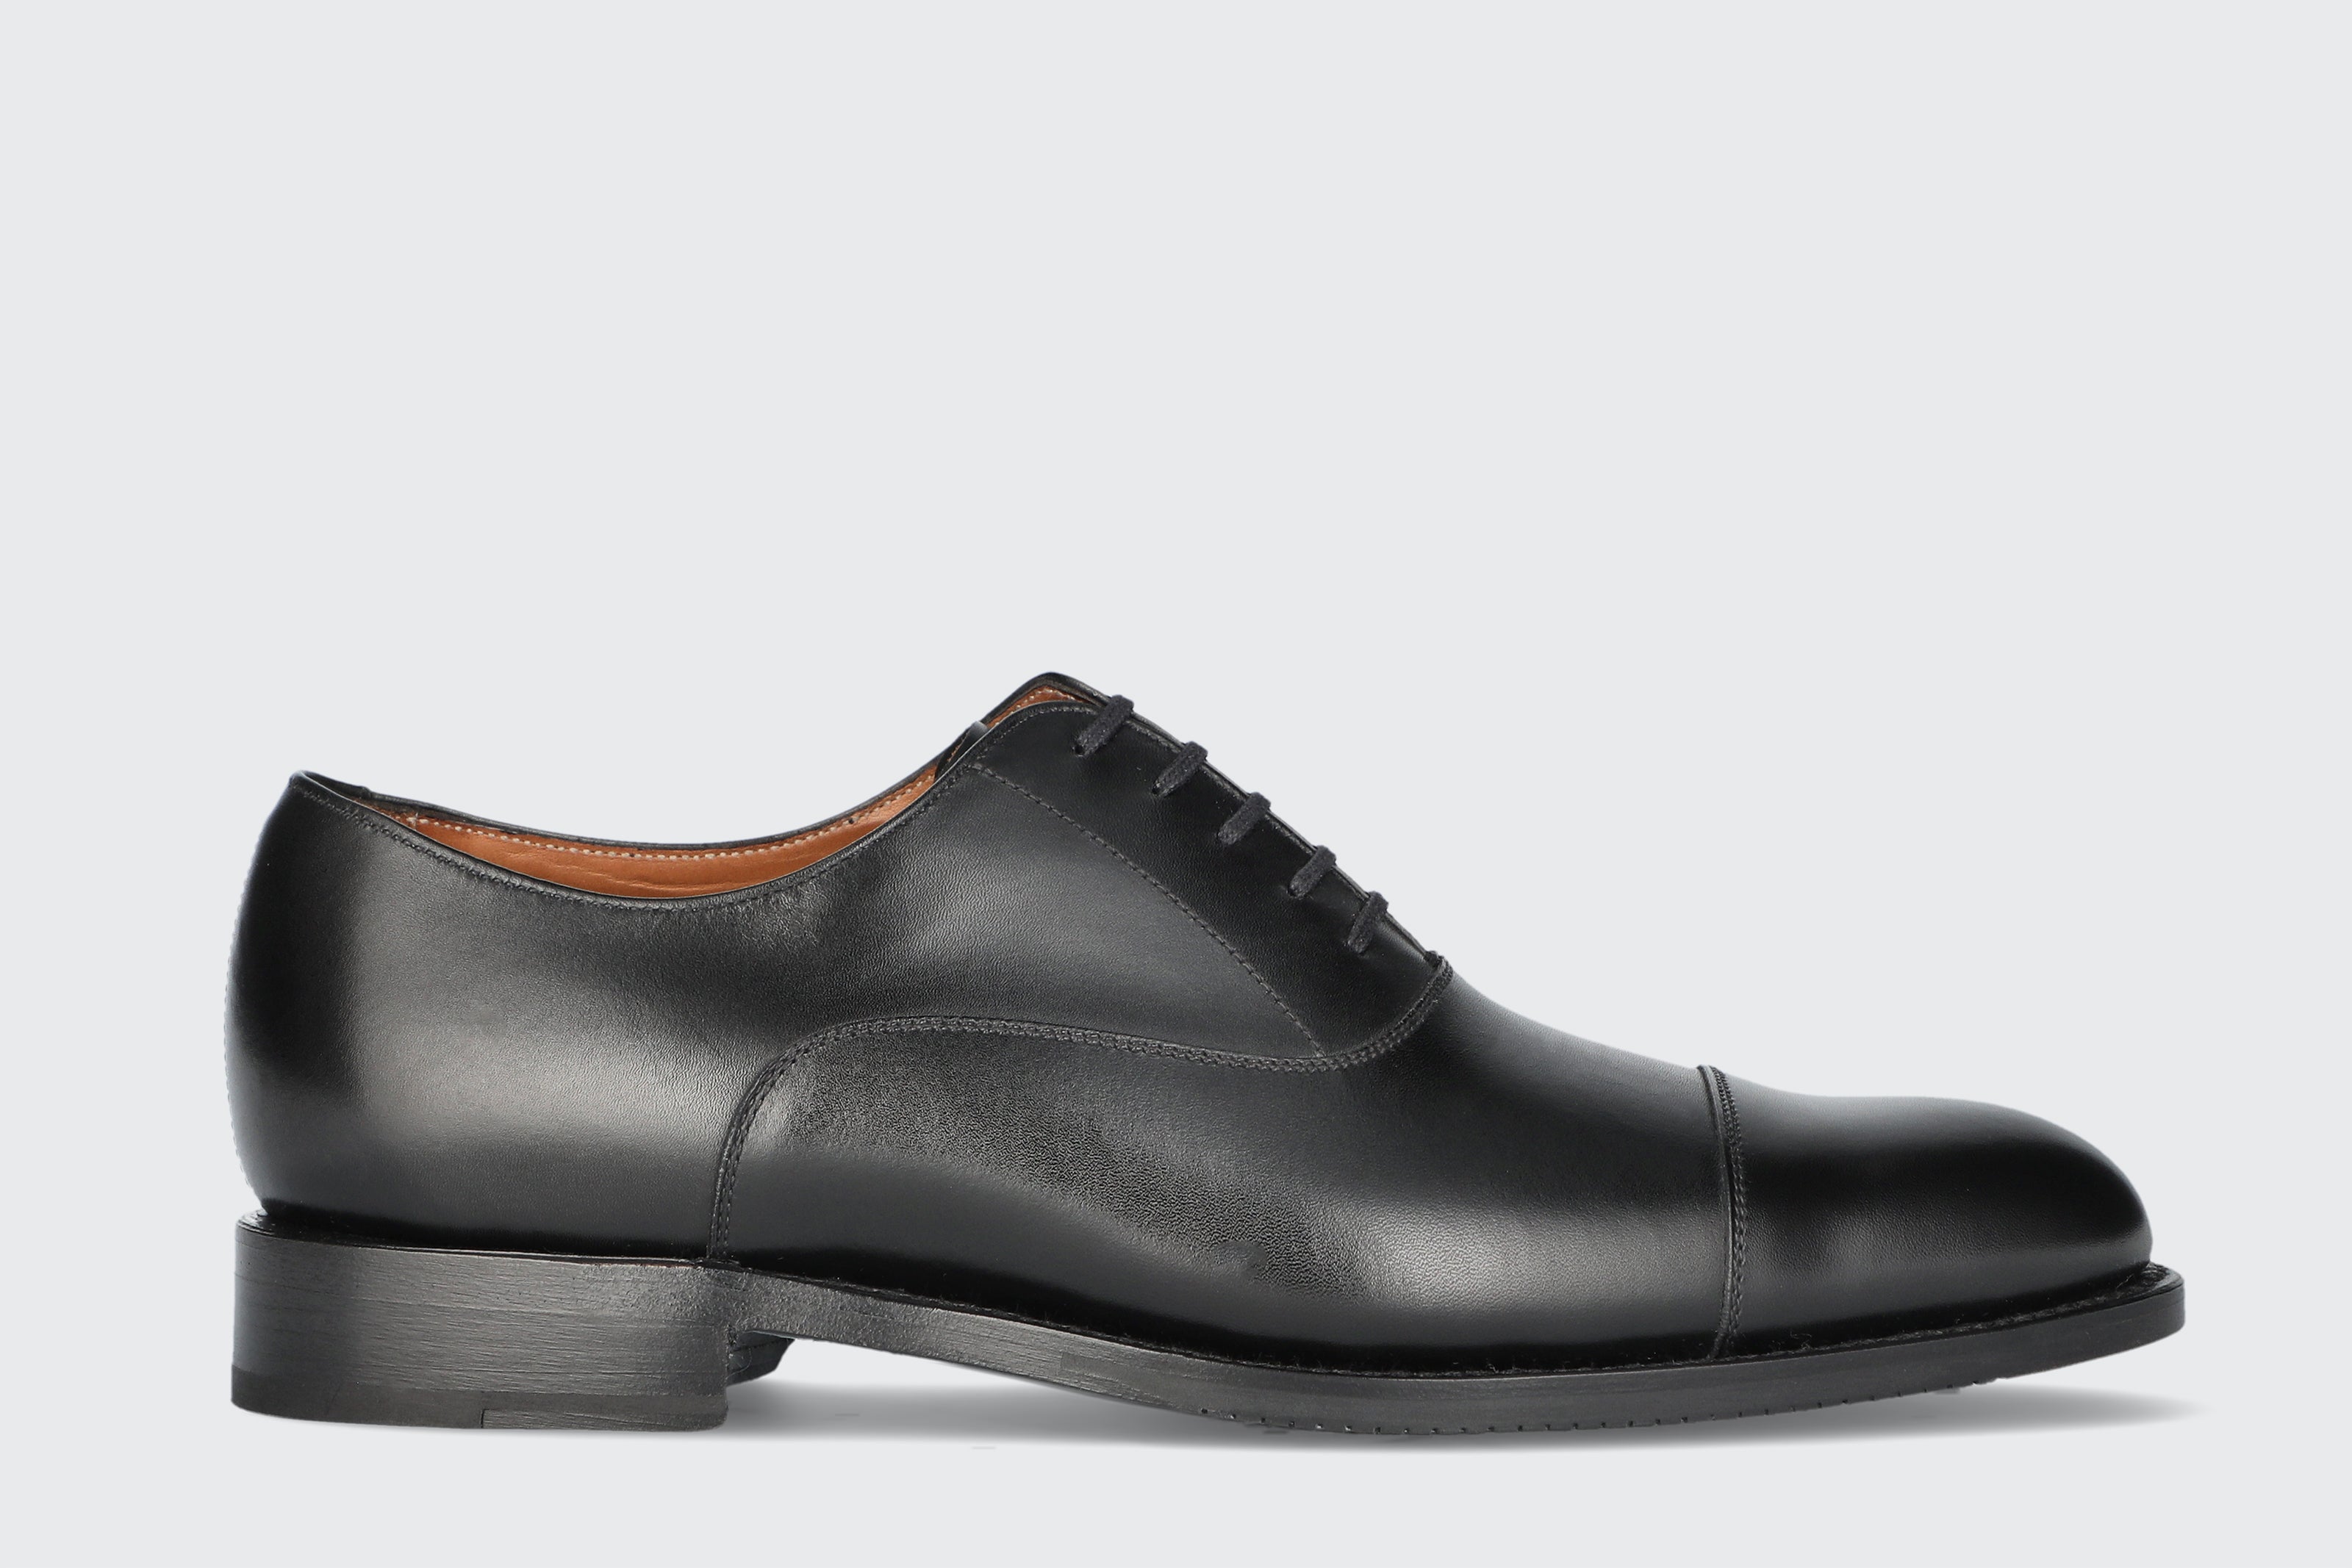 Buy Bata Black Formal Shoes For Men online